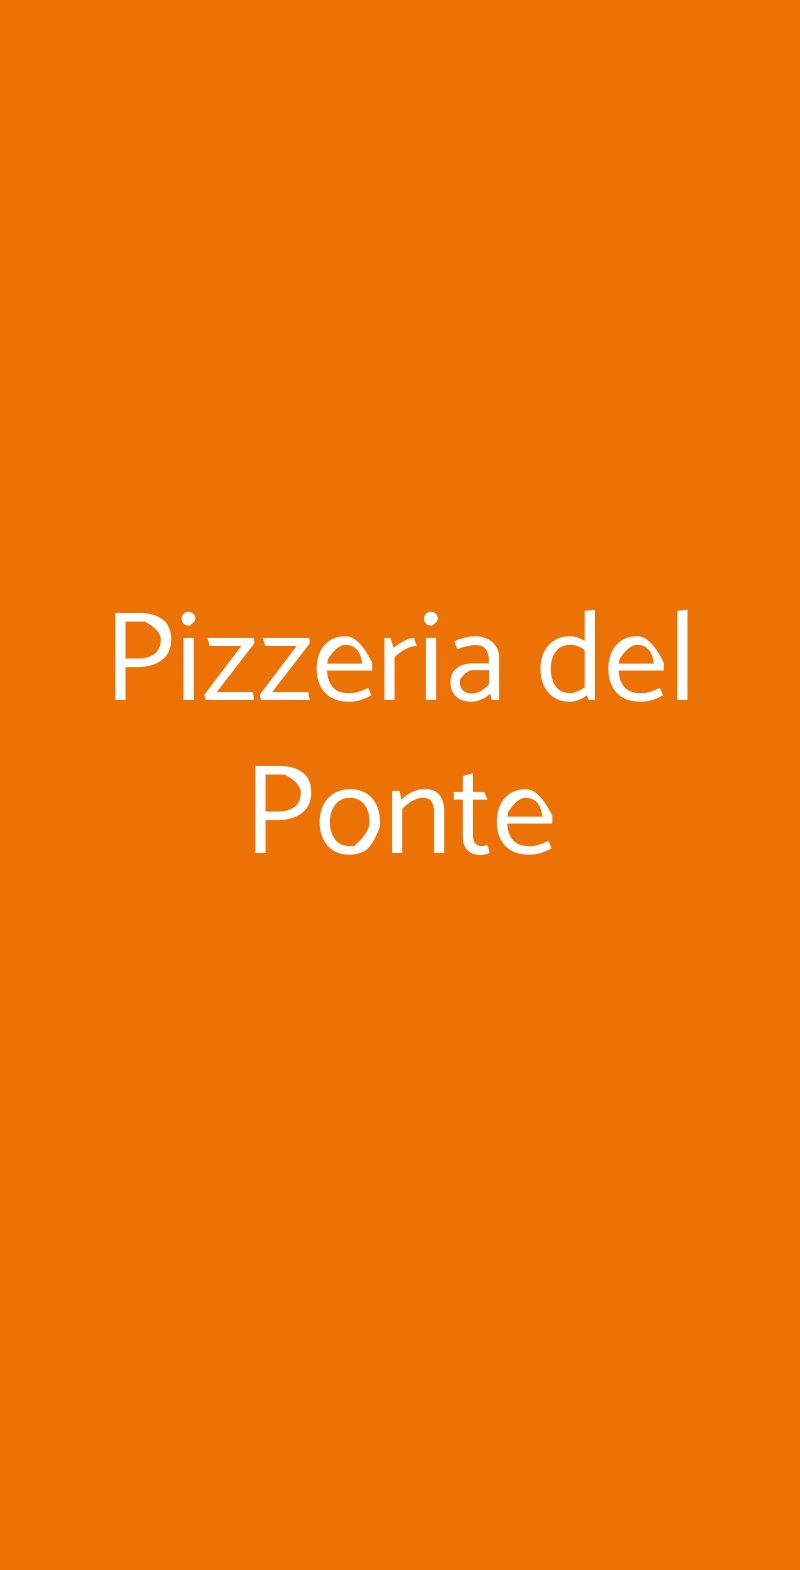 Pizzeria del Ponte Milano menù 1 pagina